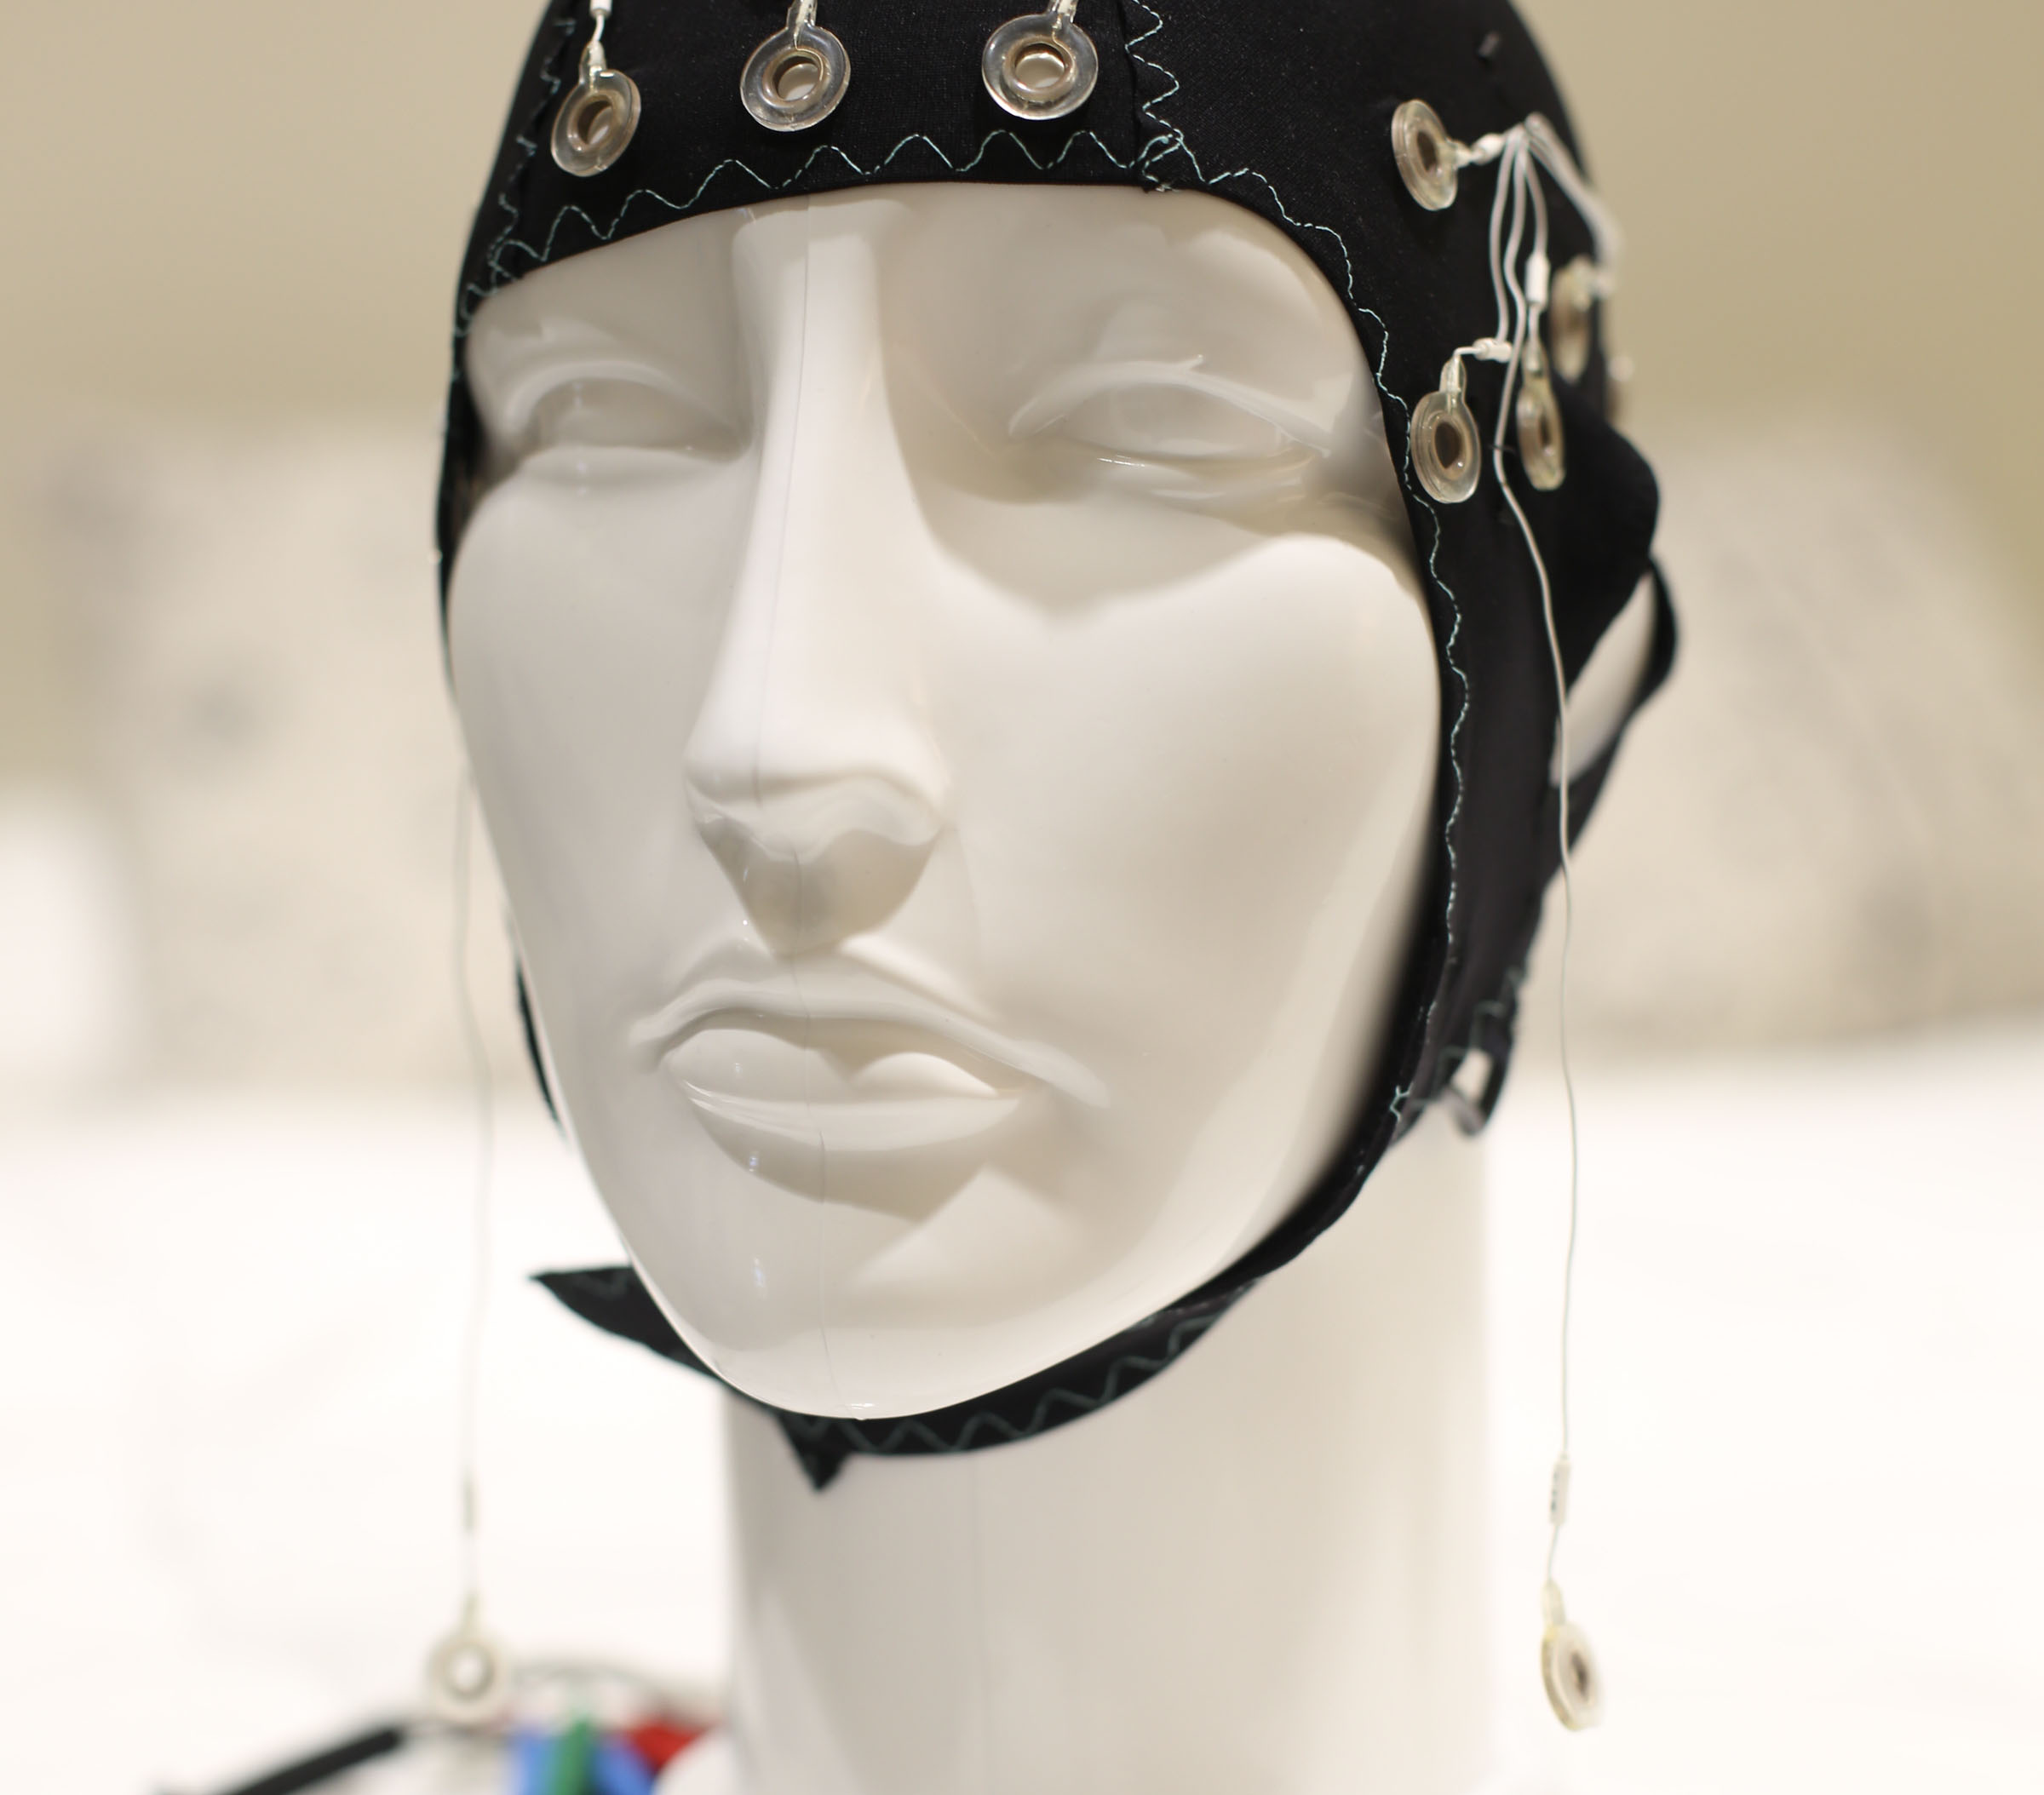 Mannequin wearing an EEG